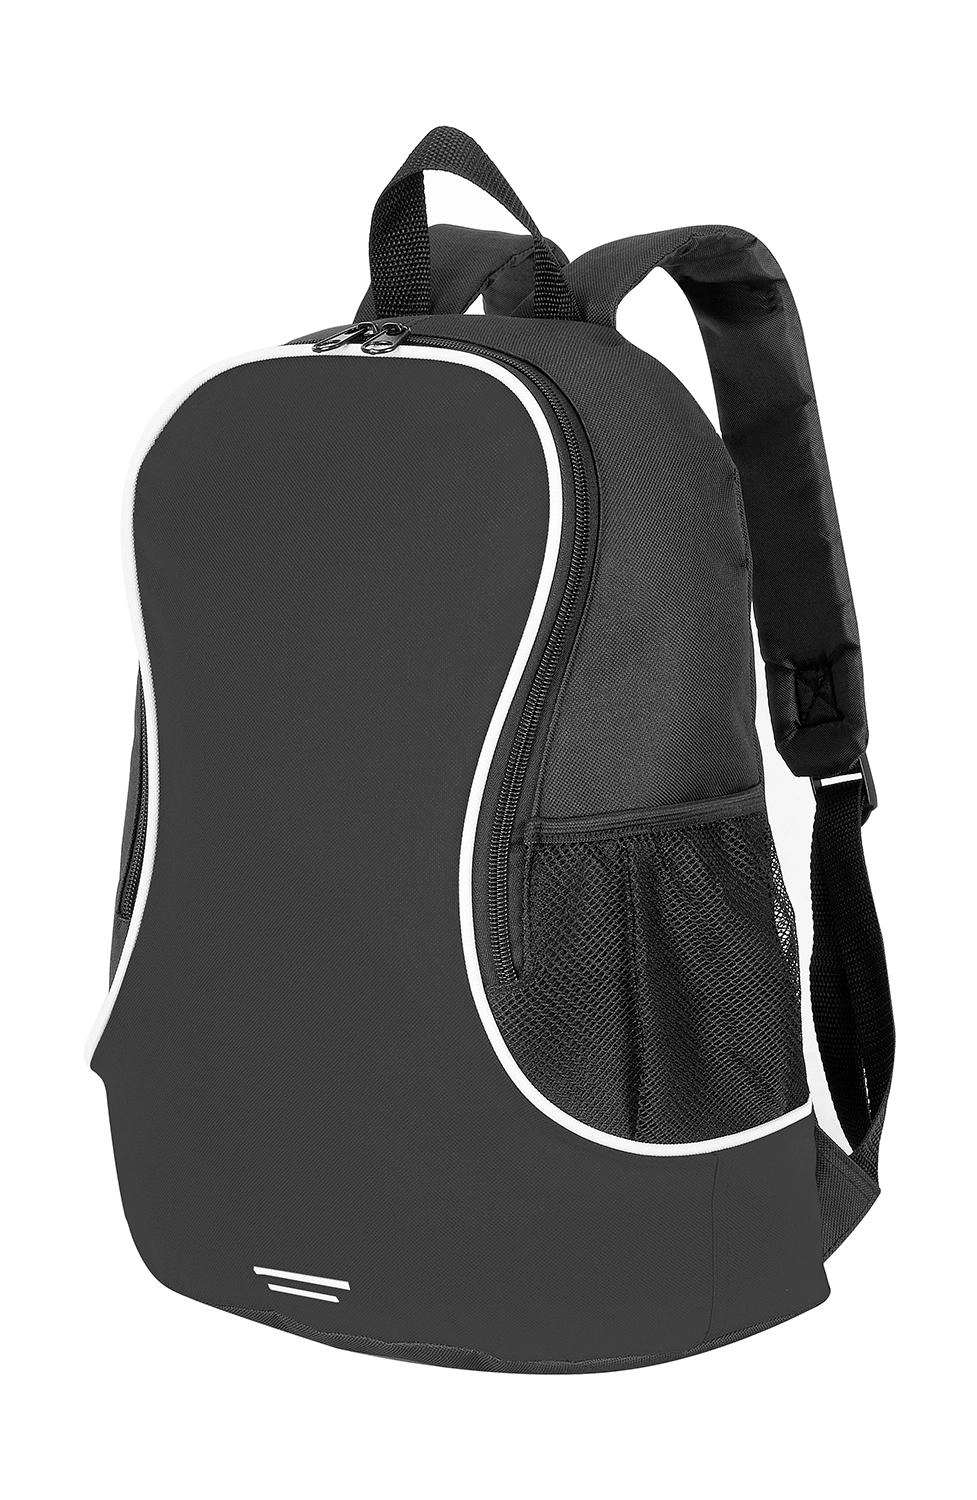 Fuji Basic Backpack zum Besticken und Bedrucken in der Farbe Black/White mit Ihren Logo, Schriftzug oder Motiv.